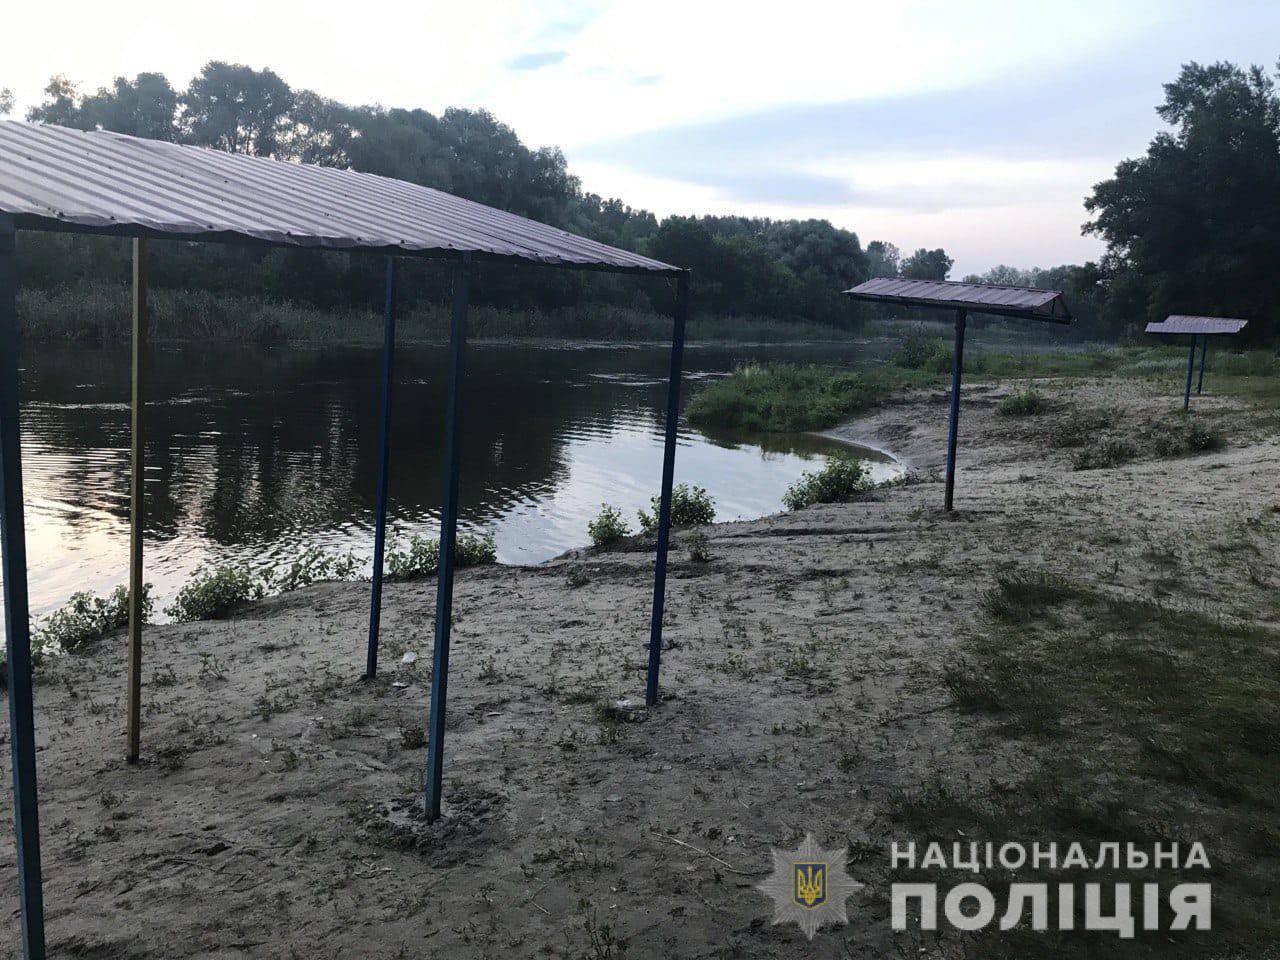 В Харьковской области утонул ребенок. Против матери открыто уголовное производство